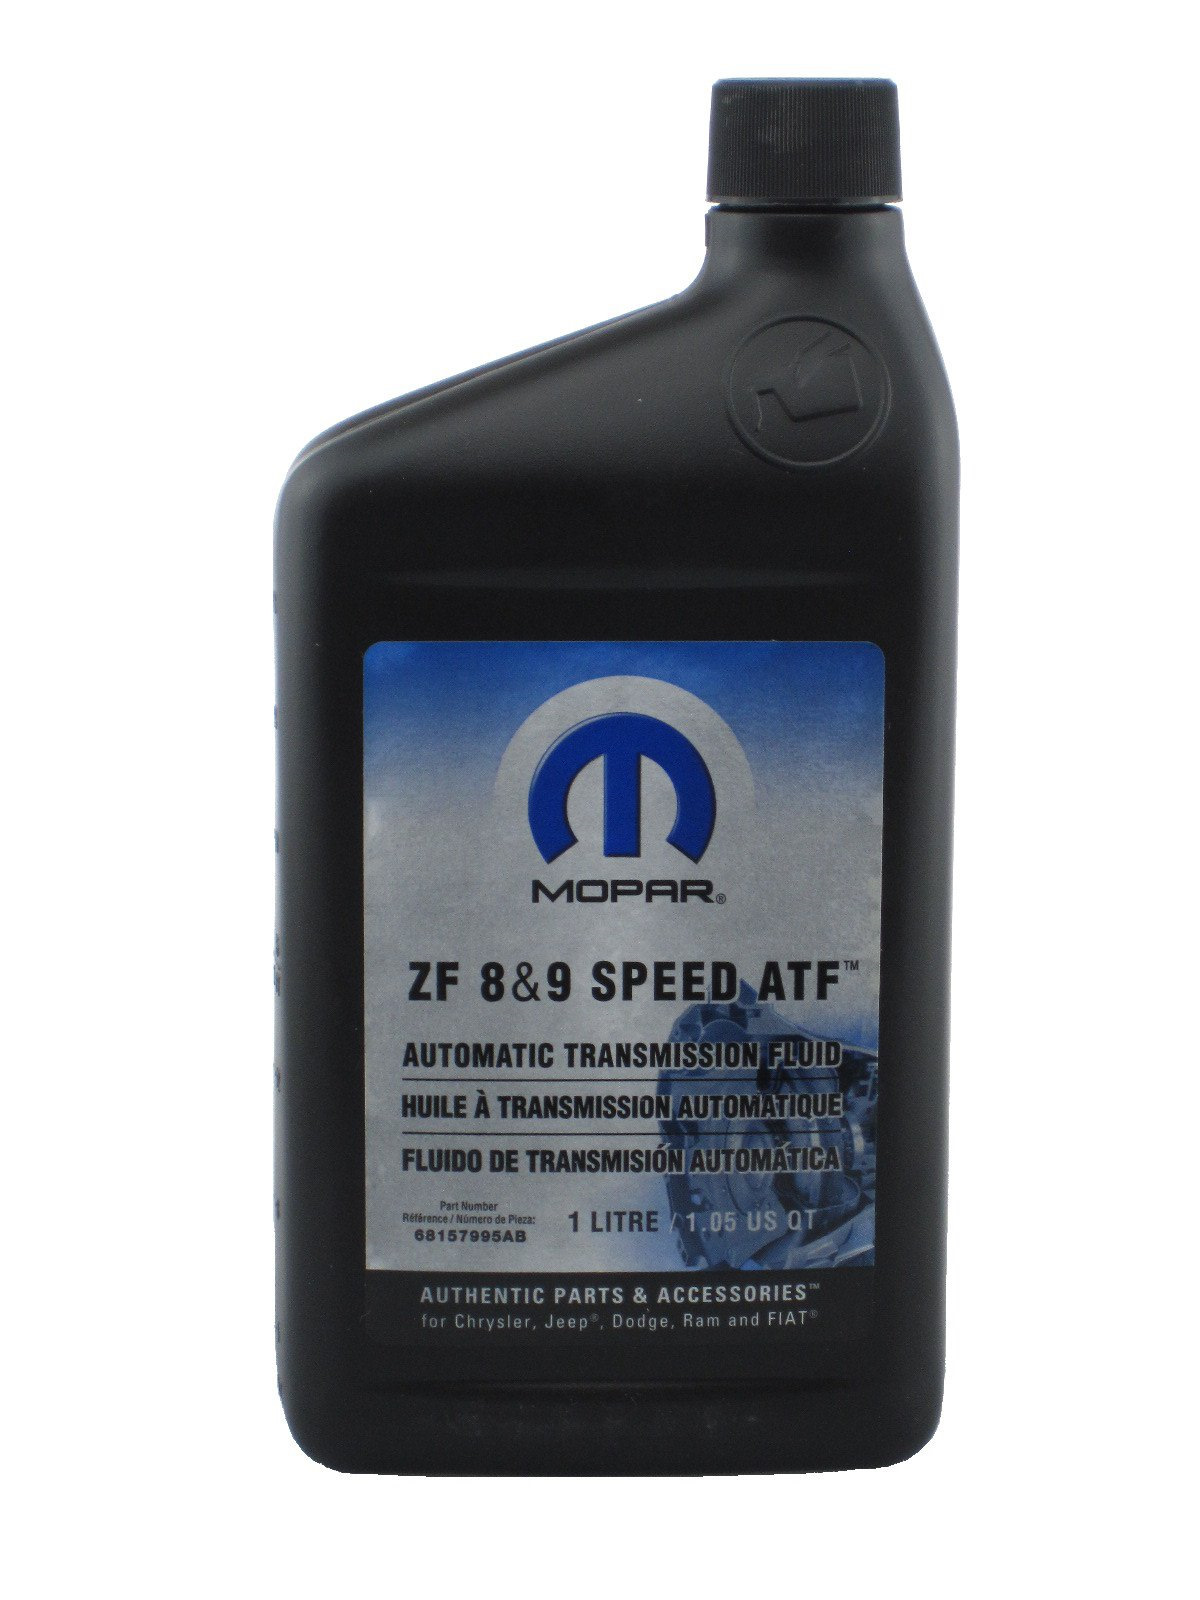 Atf speed. Mopar ZF 8 9 Speed ATF. Трансмиссионное масло Mopar ZF 8&9 Speed ATF. Mopar zf8&9 Speed ATF допуски Крайслера. ATF ZF Fluid 8 оригинал отличия.